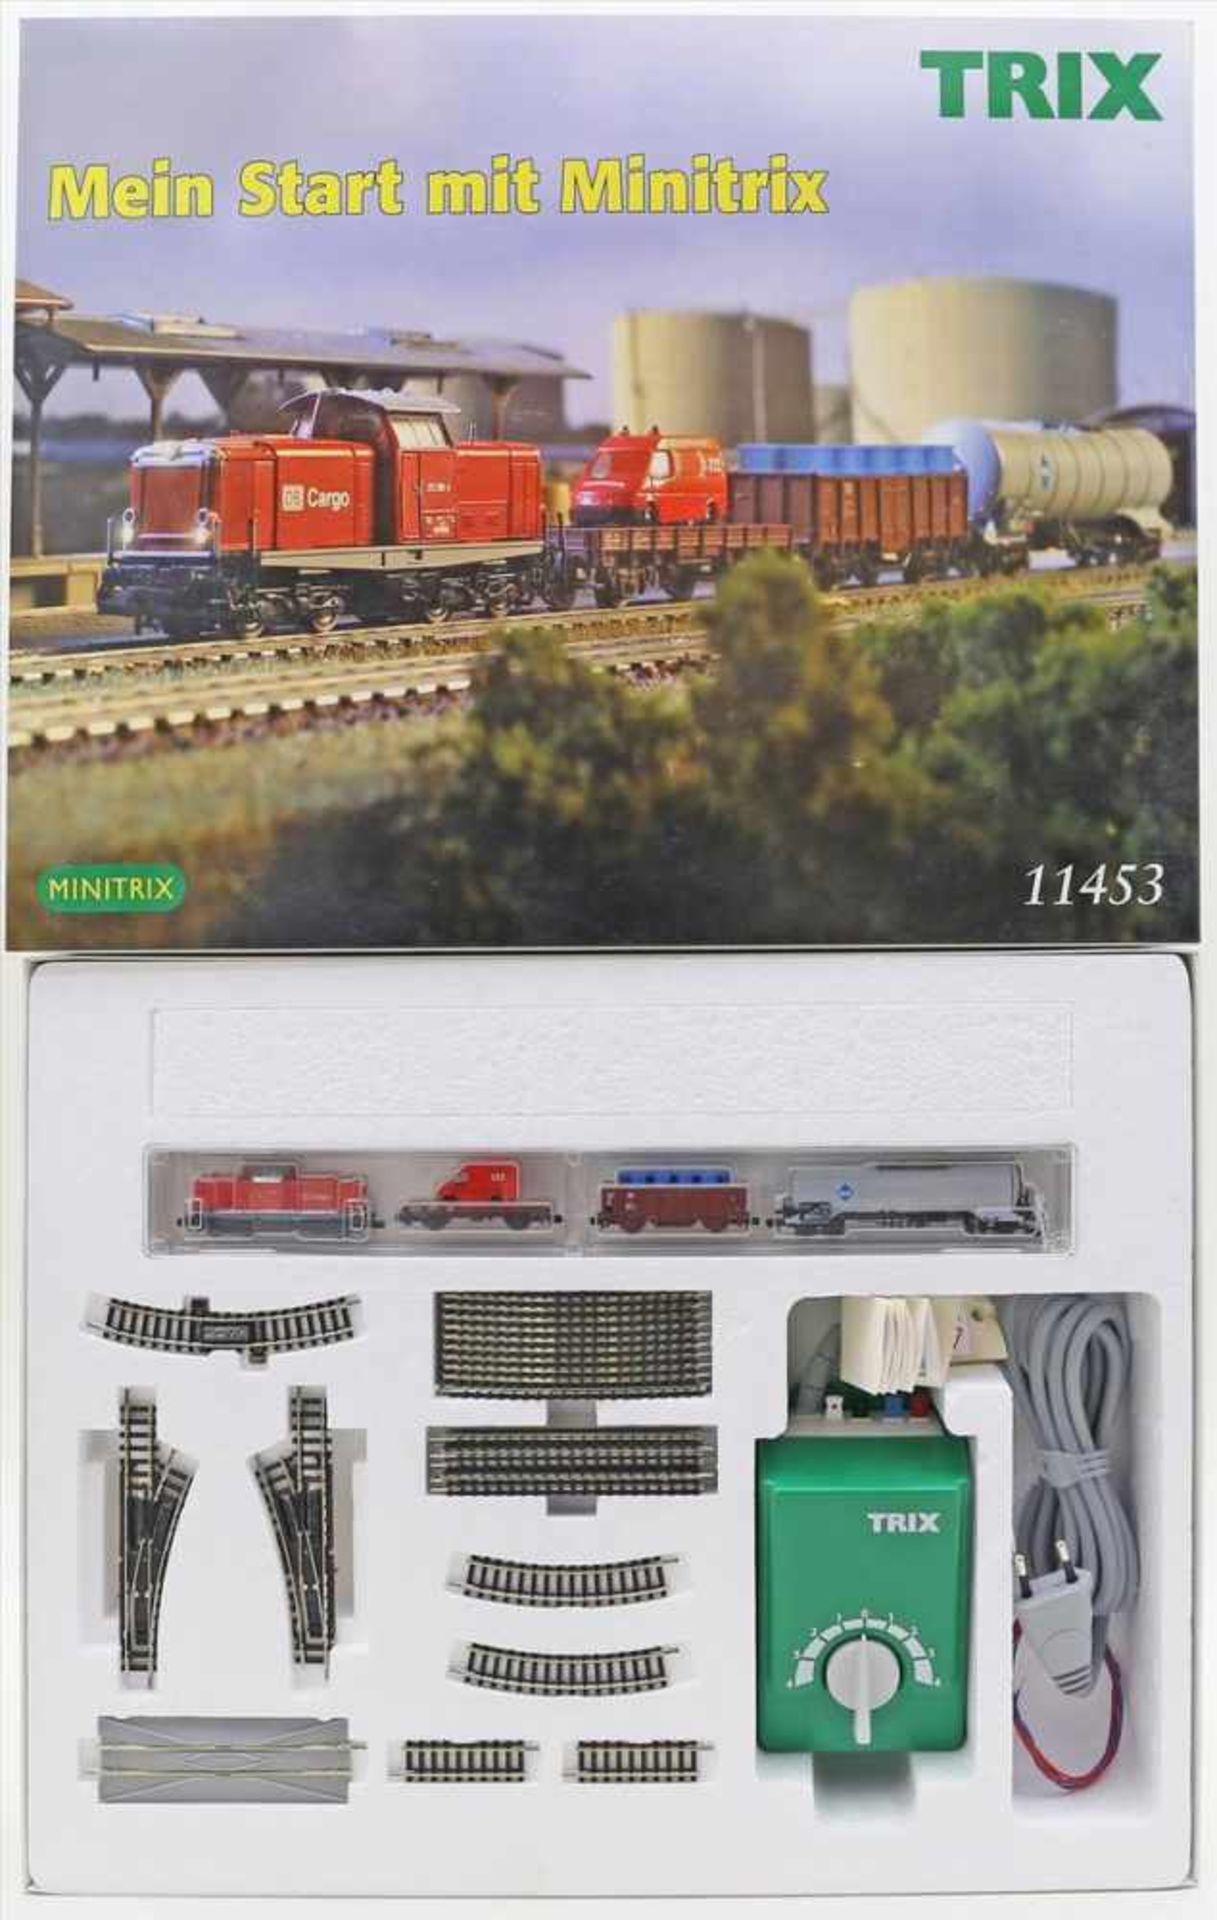 Startpackung mit Güterzug, Minitrix Spur N.Art.-Nr. 11453, Funktion der Lok nicht geprüft.